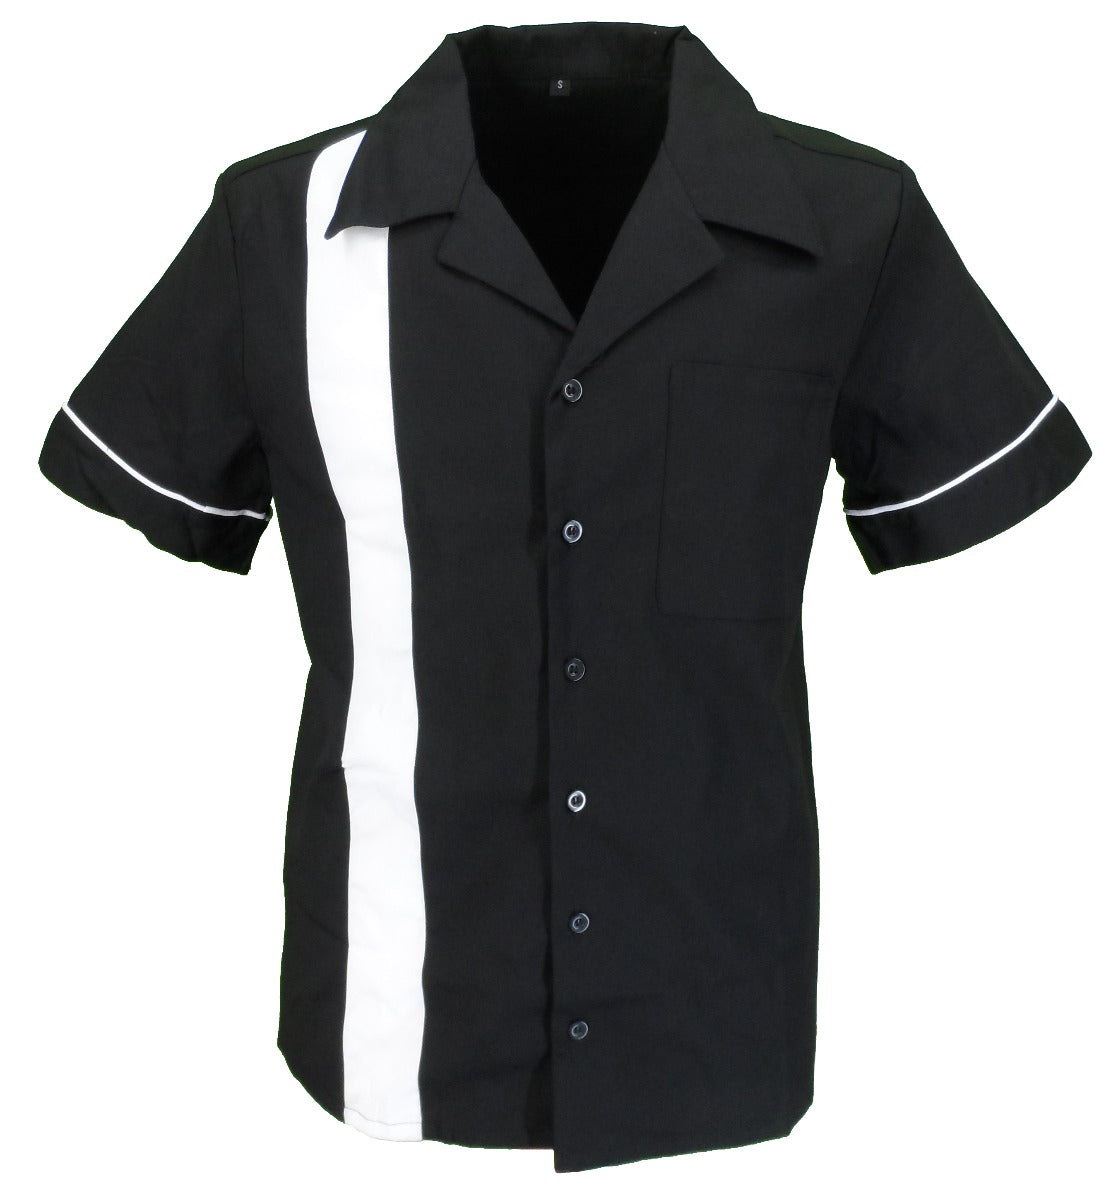 Mazeys Retro-Rockabilly Bowling Shirts Mit 1 Streifen In Schwarz/Weiß